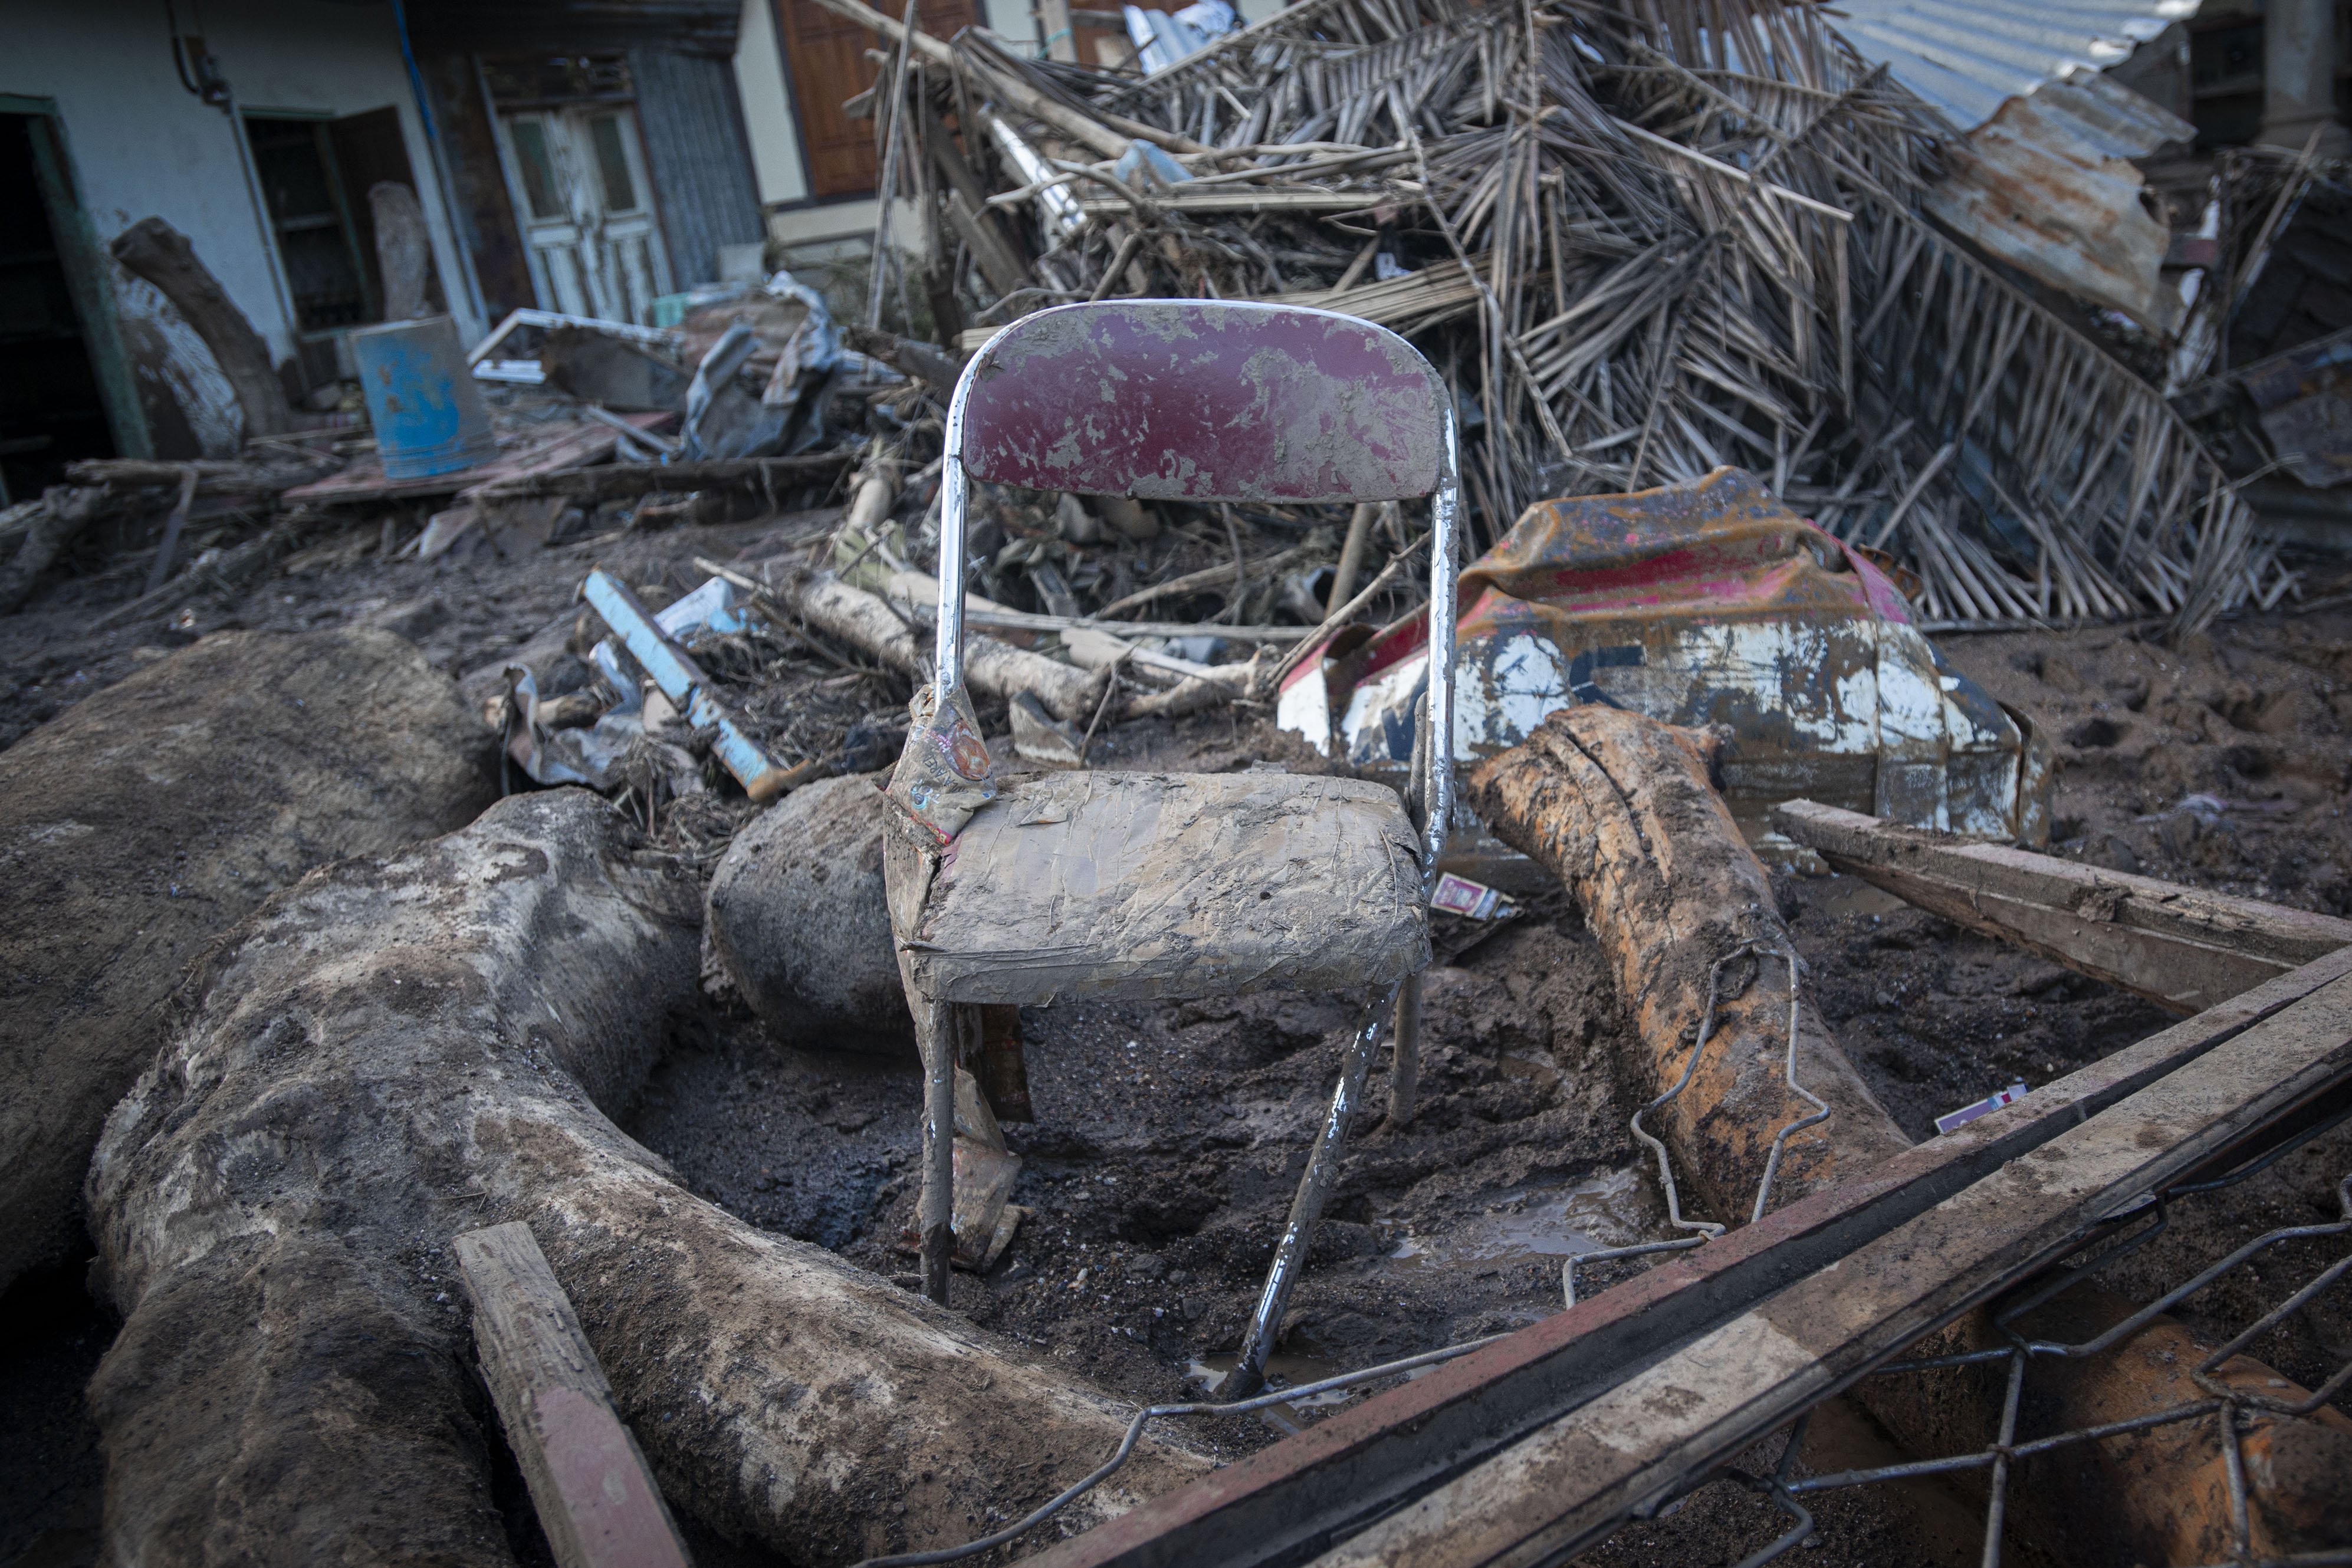 Sebuah kursi tertutup lumpur di antara puing-puing rumah akibat banjir bandang di Desa Weiburak, Adonara Timur, Kabupaten Flores Timur, Nusa Tenggara Timur (NTT).\r\n